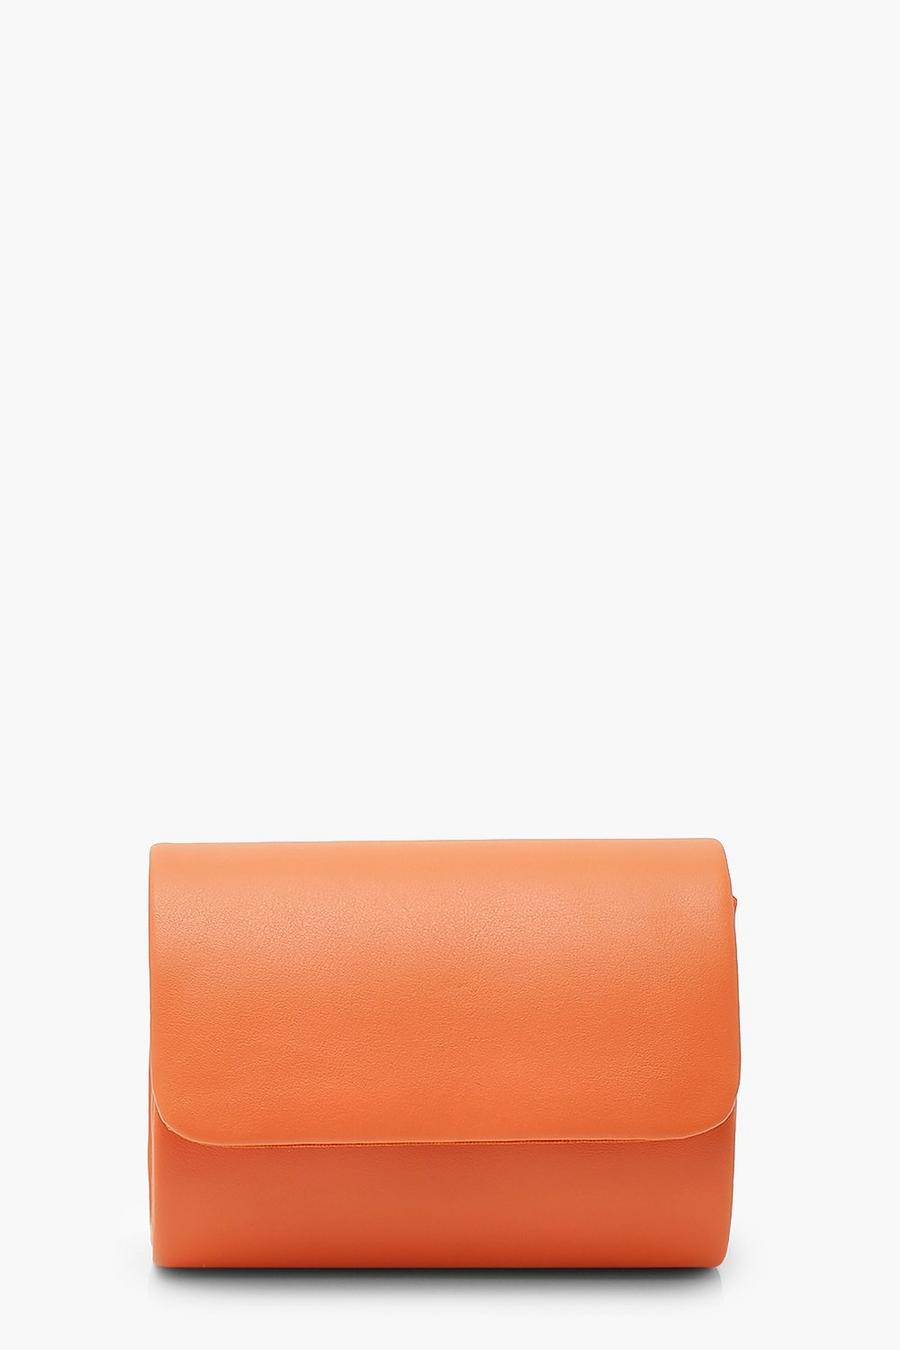 Orange PU Structured Mini Clutch Bag & Chain image number 1